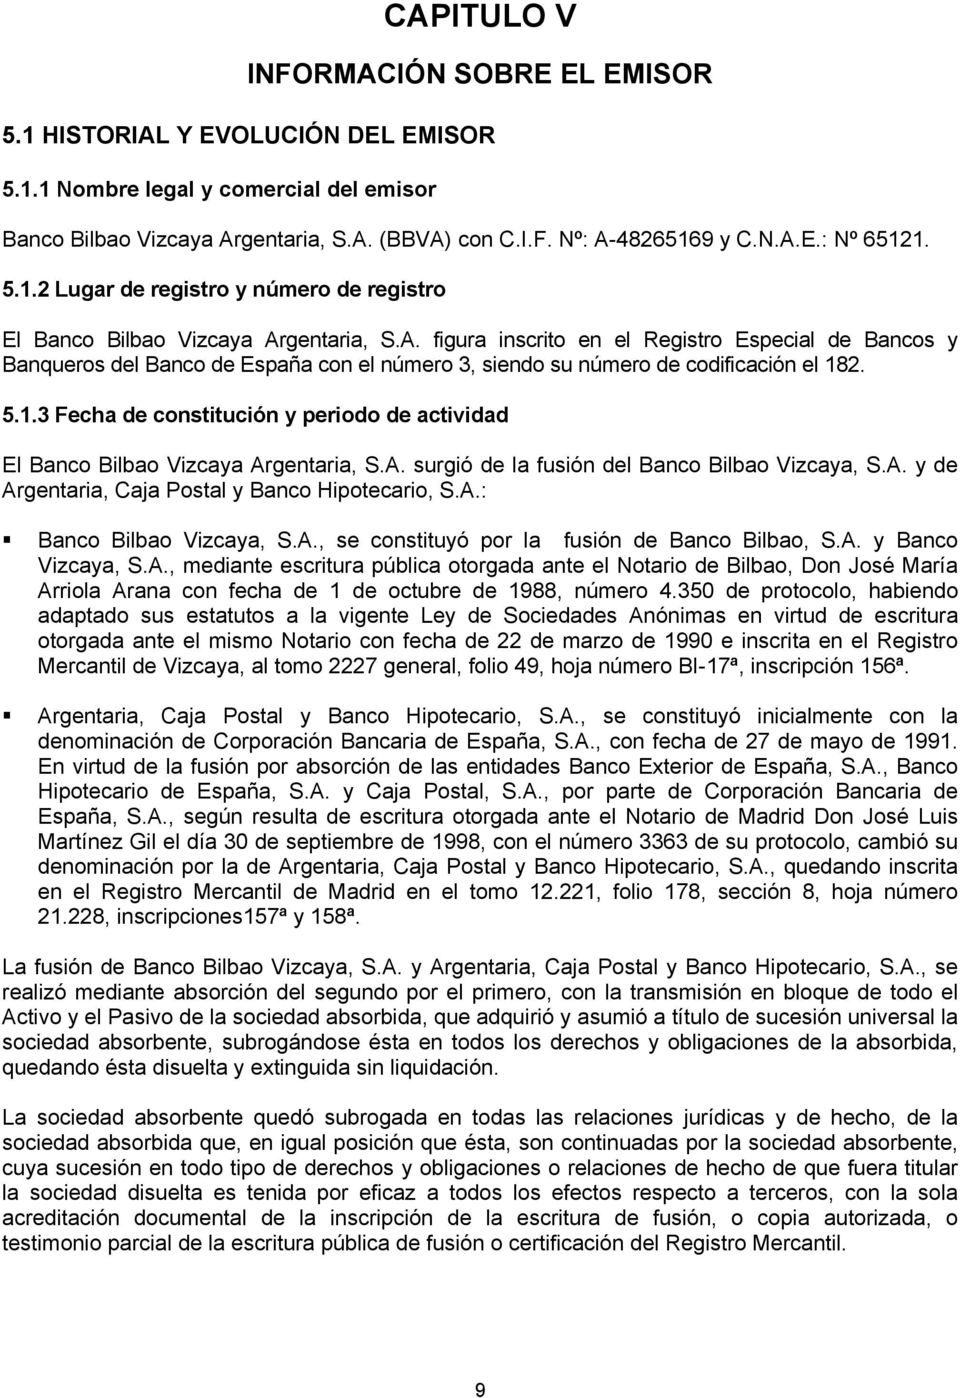 gentaria, S.A. figura inscrito en el Registro Especial de Bancos y Banqueros del Banco de España con el número 3, siendo su número de codificación el 18